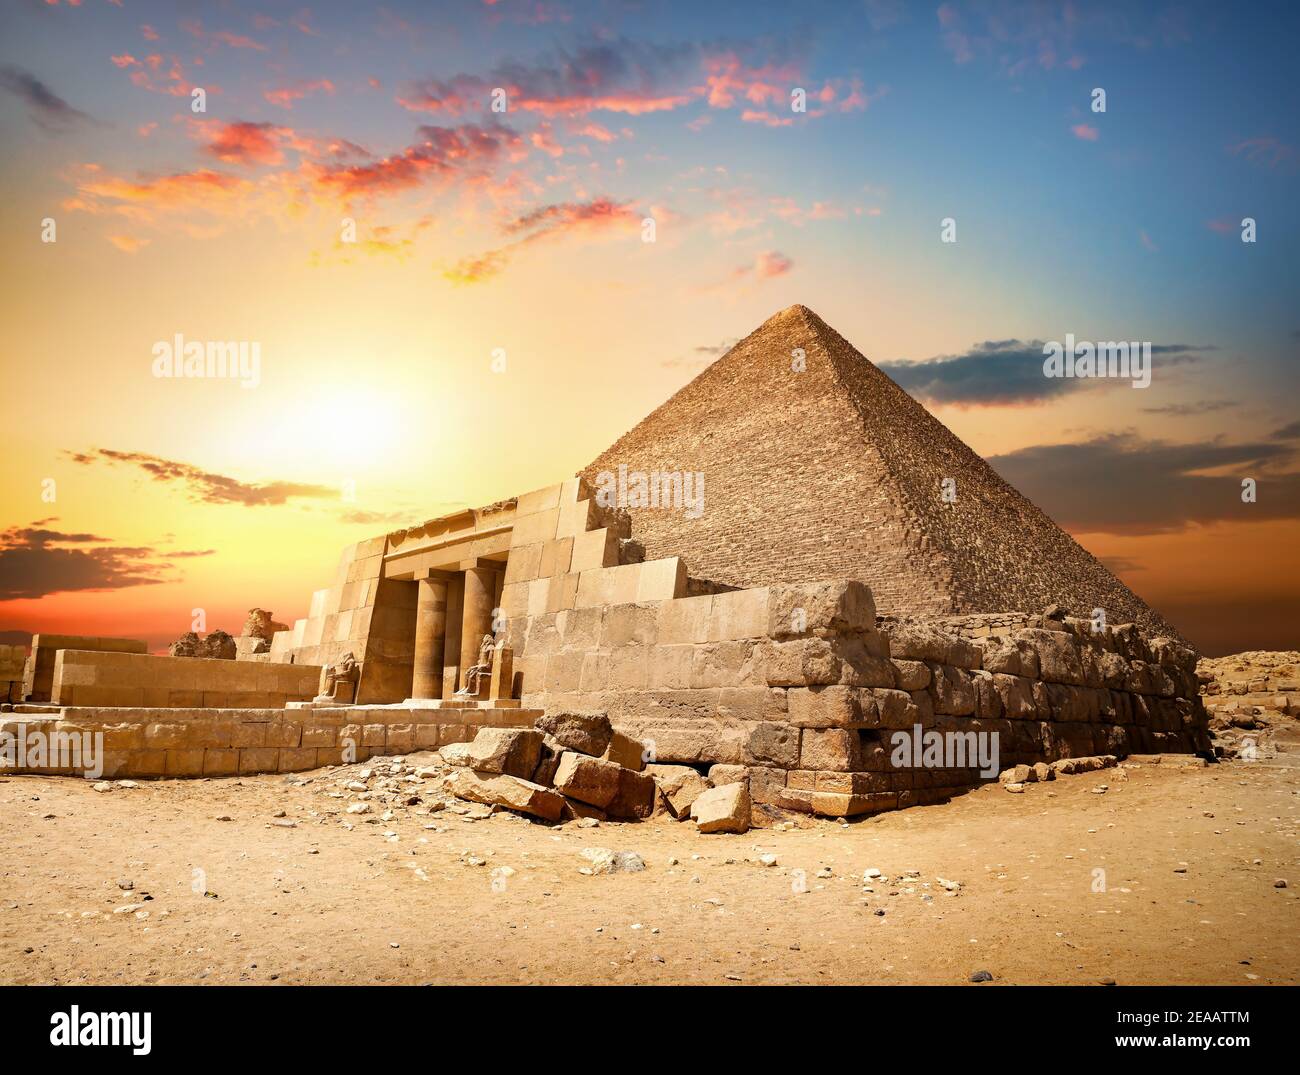 Pyramide de Khéops ruiné au Caire Egypte Banque D'Images